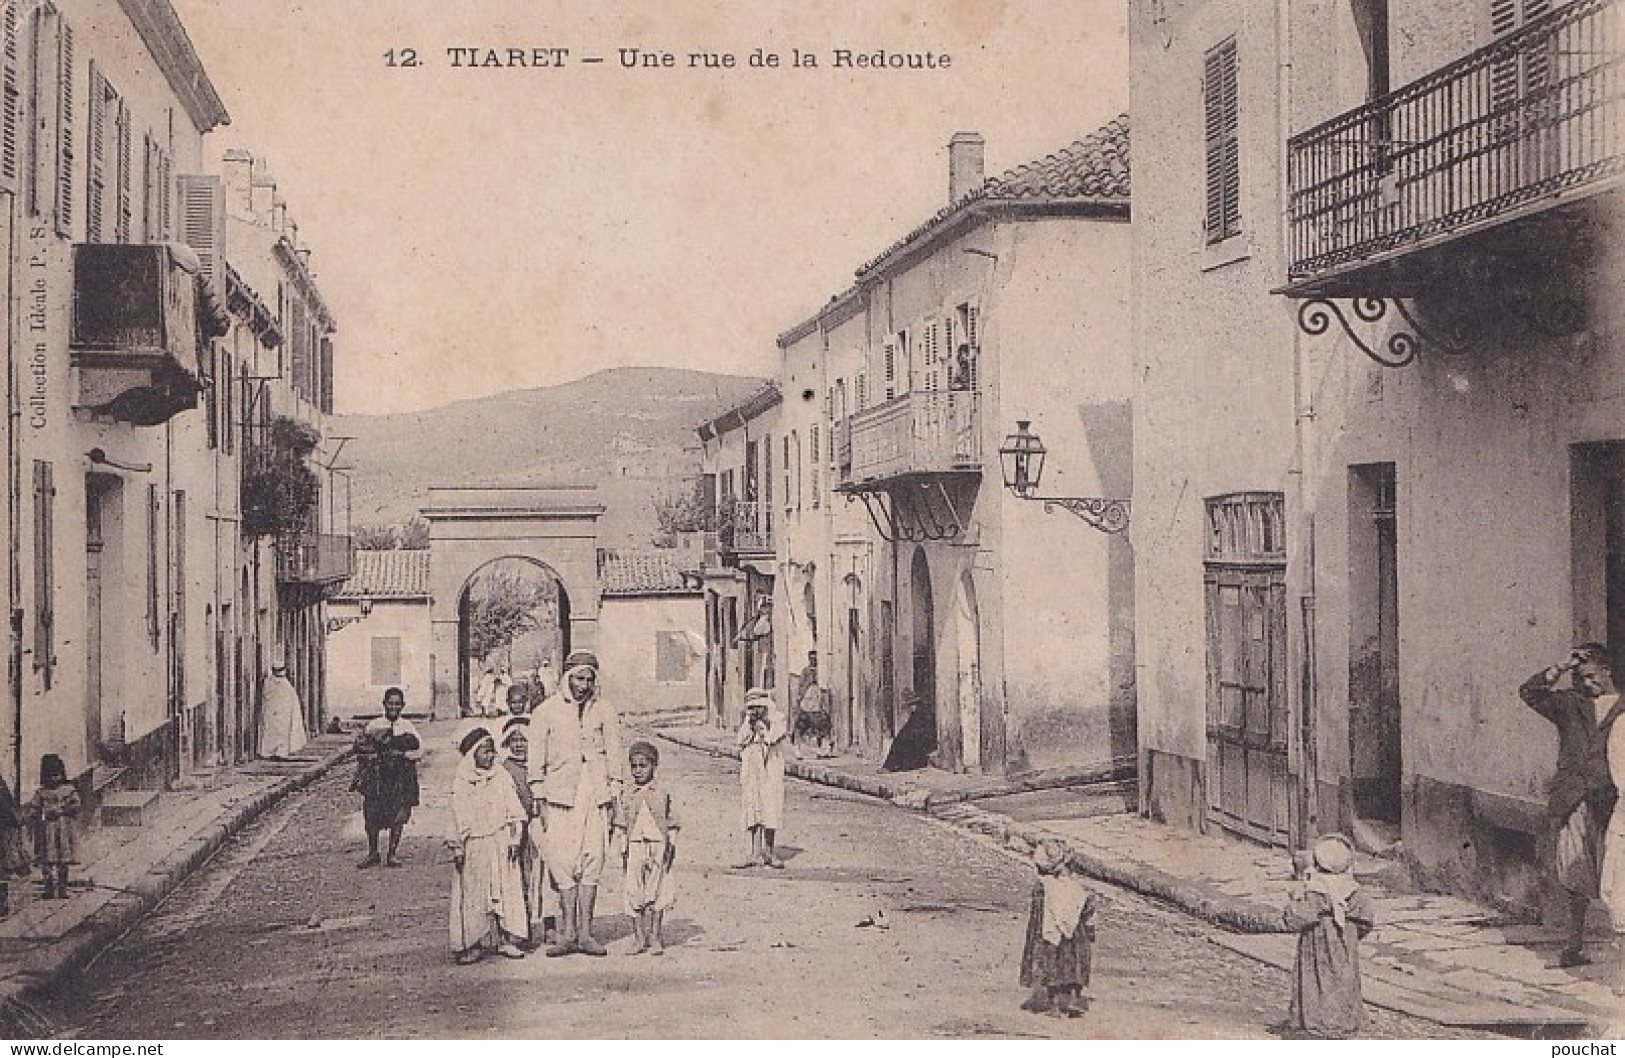  C9- TIARET (ALGERIE) UNE RUE DE LA REDOUTE - ( ANIMEE - HABITANTS - 2 SCANS ) - Tiaret